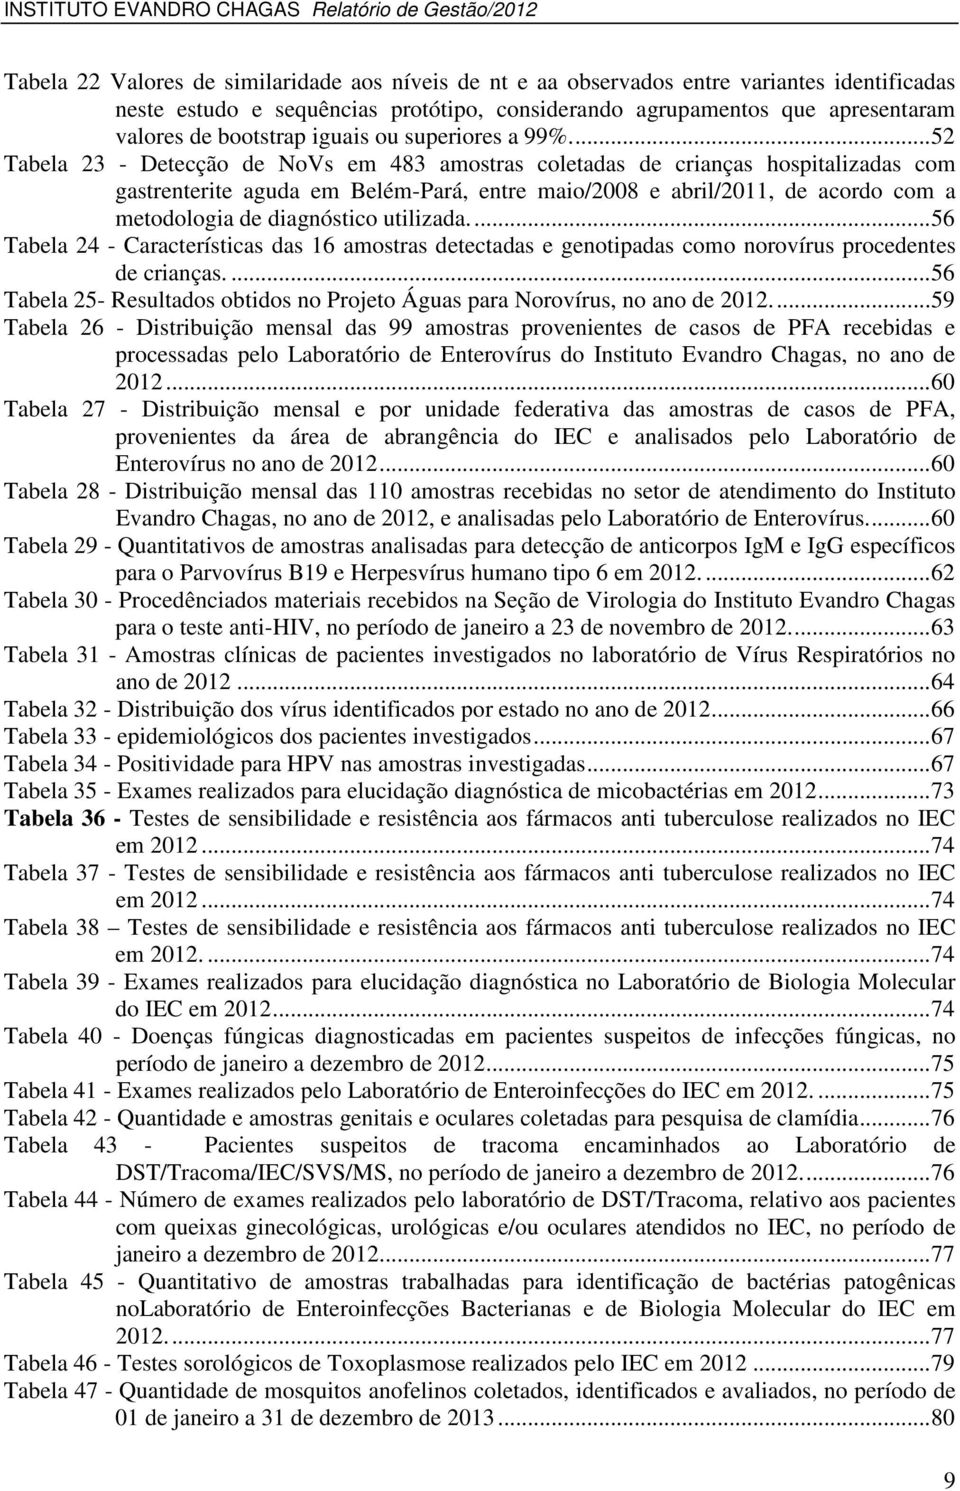 ... 52 Tabela 23 - Detecção de NoVs em 483 amostras coletadas de crianças hospitalizadas com gastrenterite aguda em Belém-Pará, entre maio/2008 e abril/2011, de acordo com a metodologia de